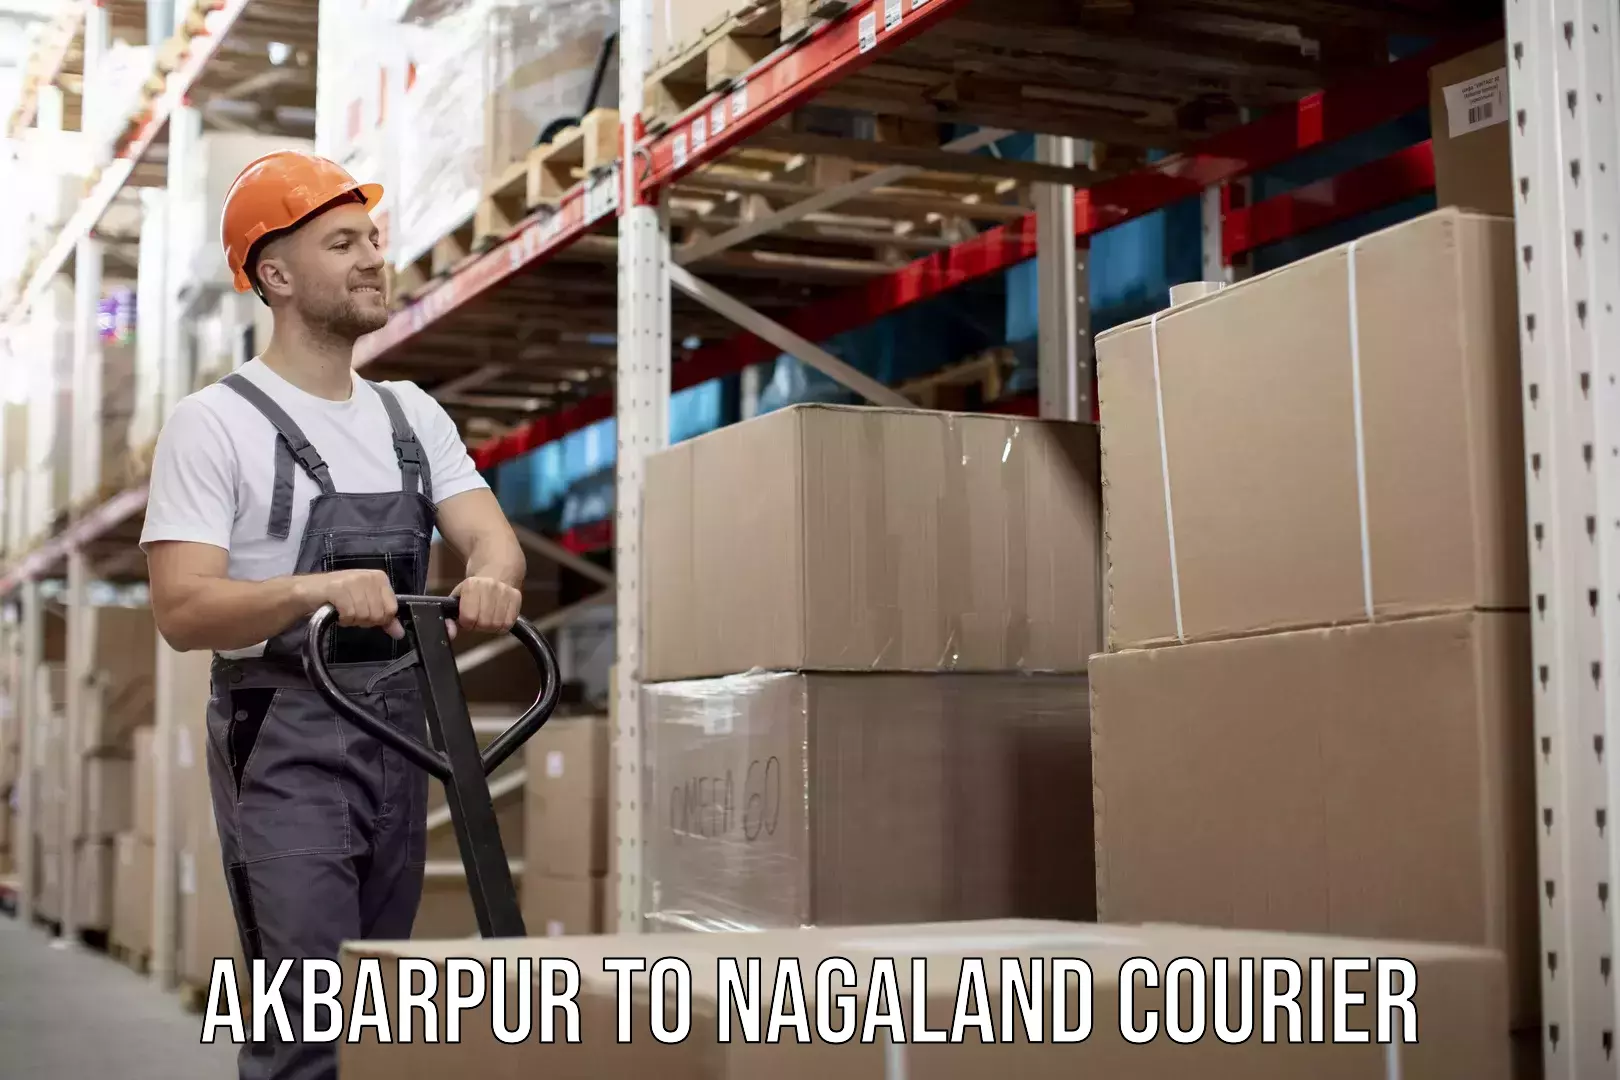 Lightweight courier Akbarpur to Nagaland